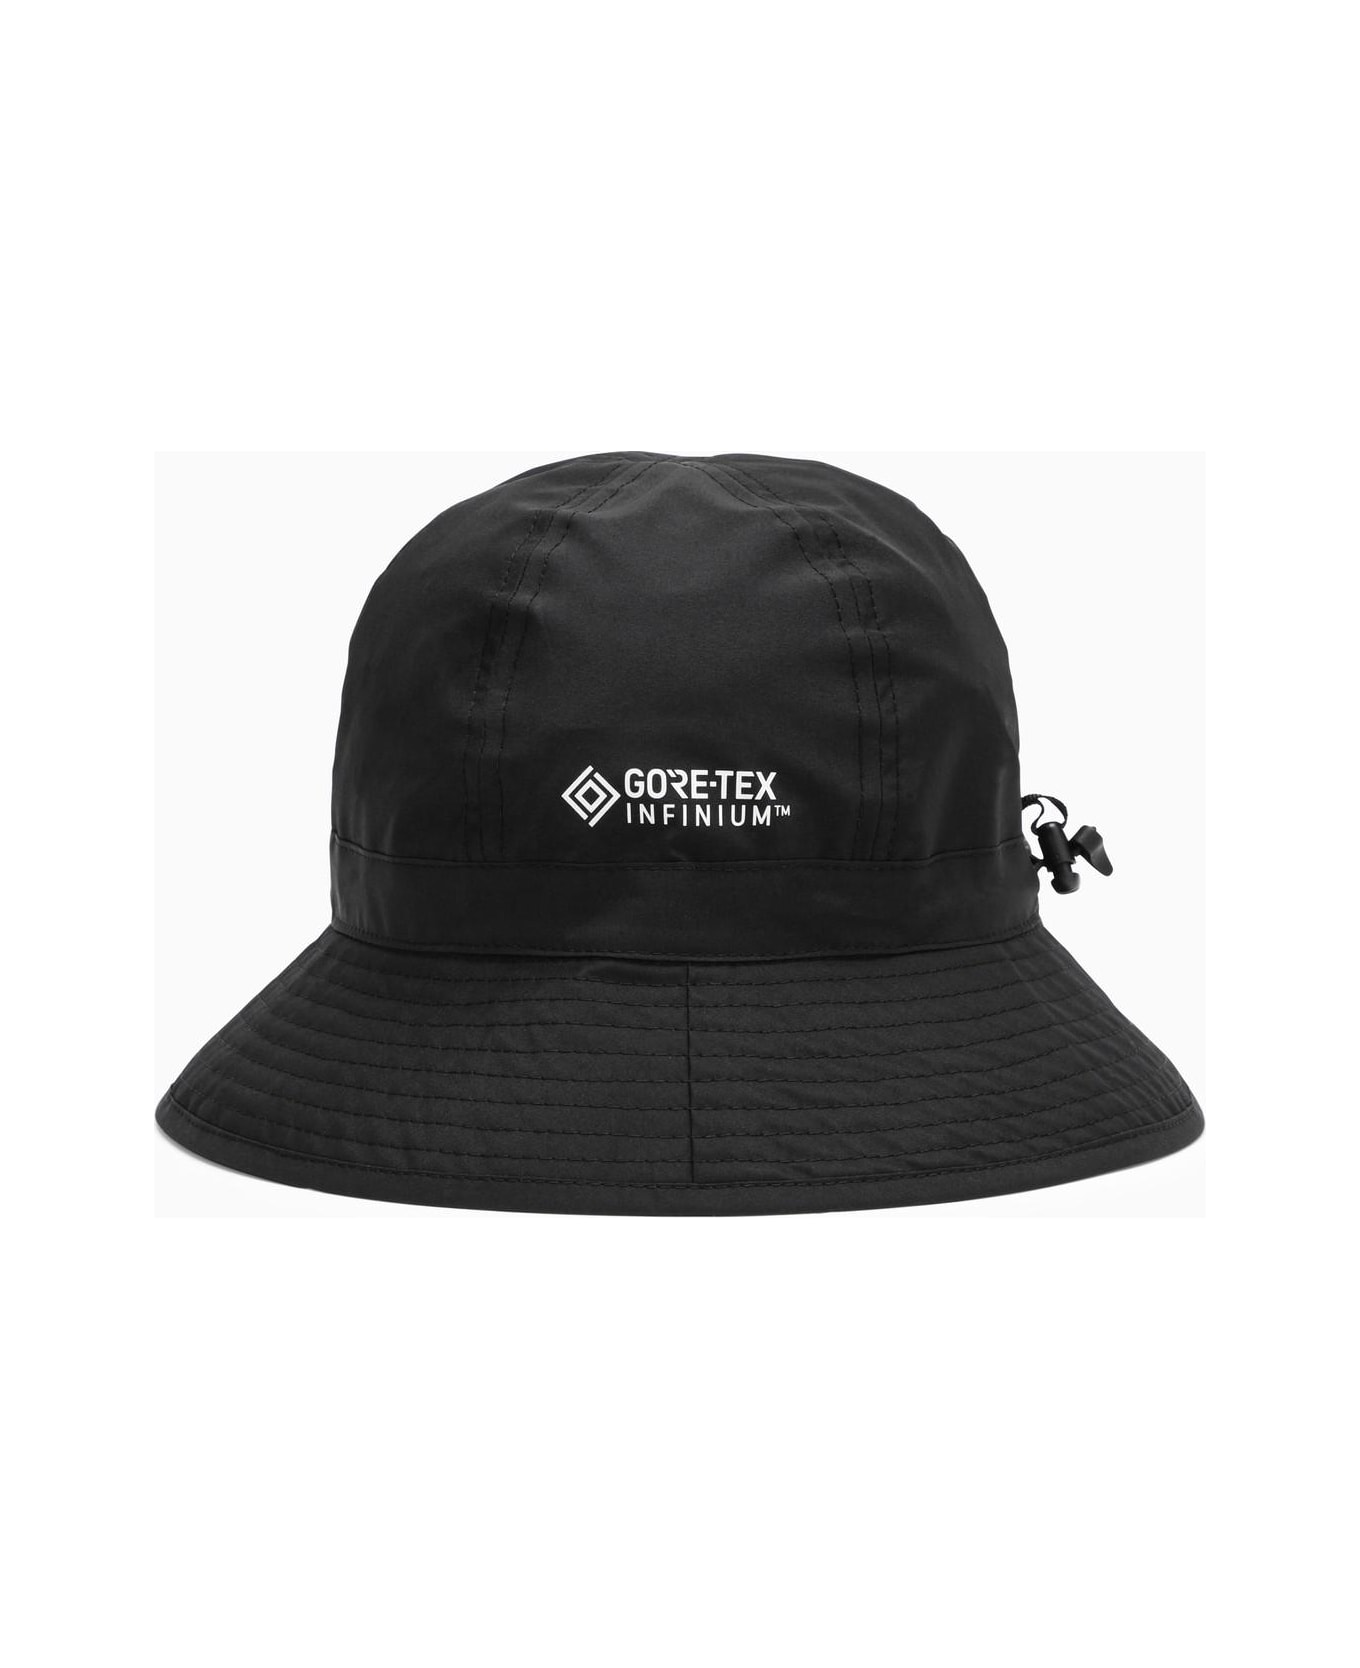 Moncler Genius Nylon Black Hat - Nero 帽子